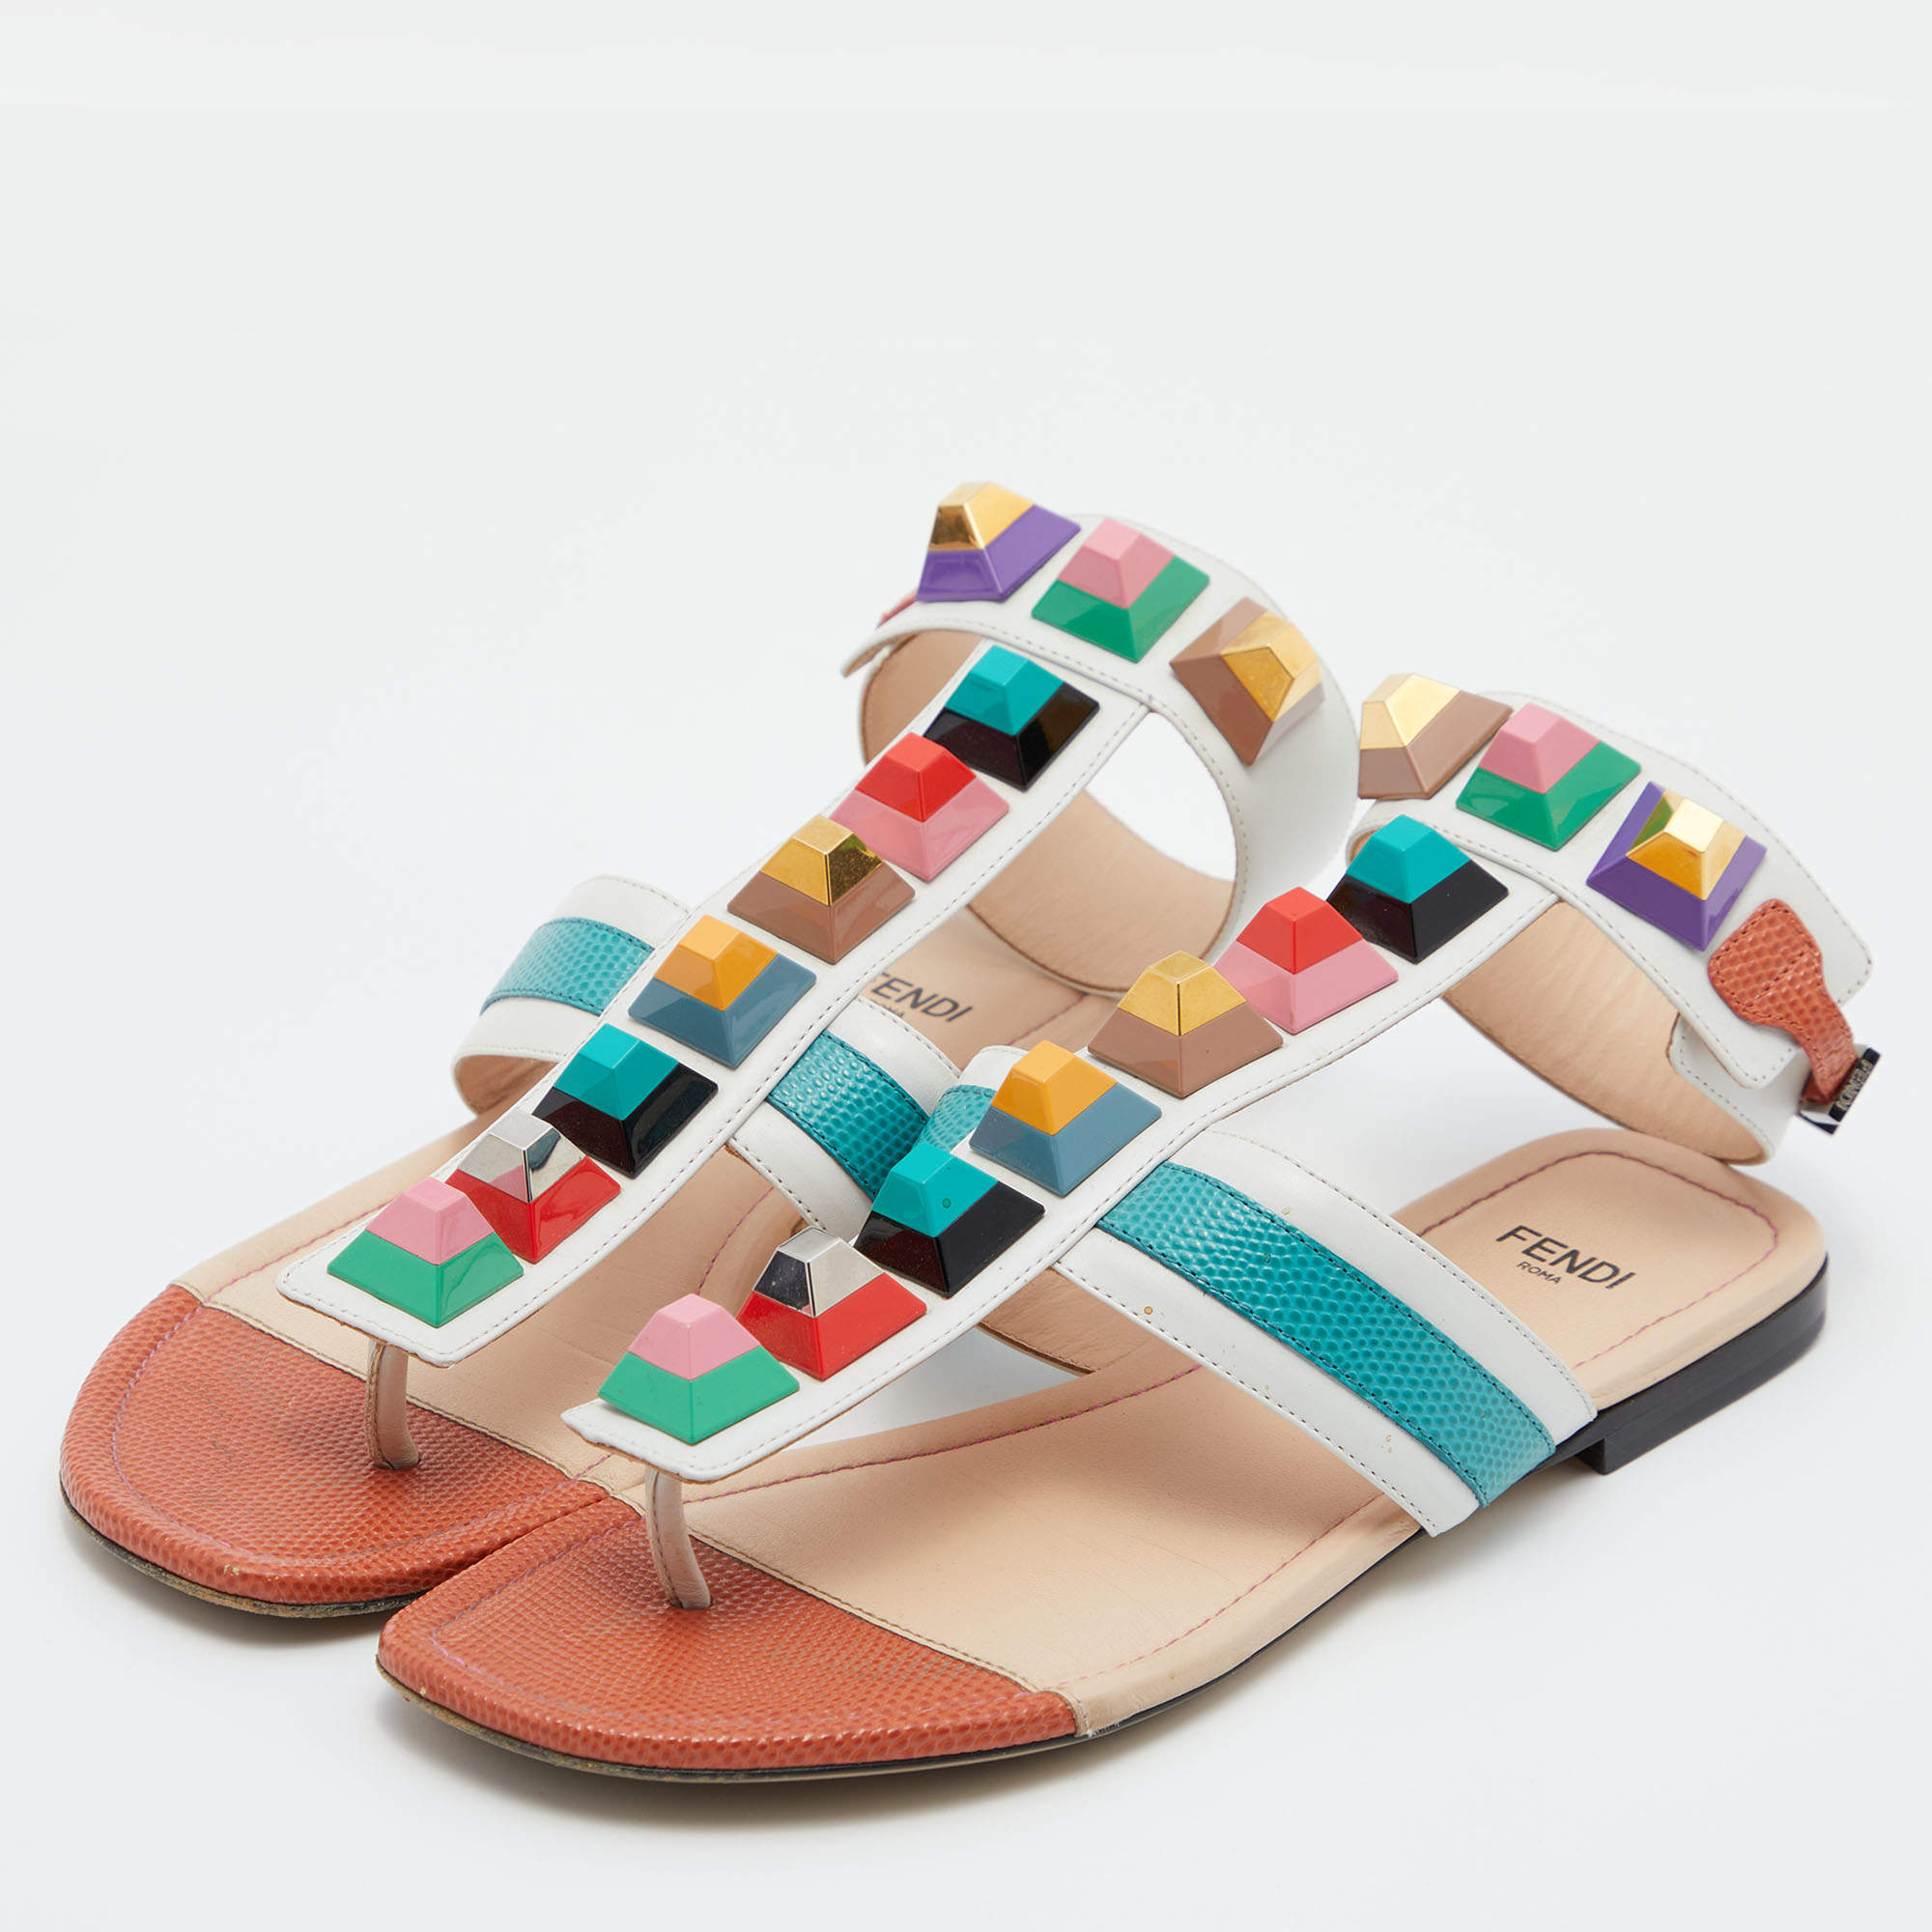 Fendi - Flat sandals - fashionporto.com